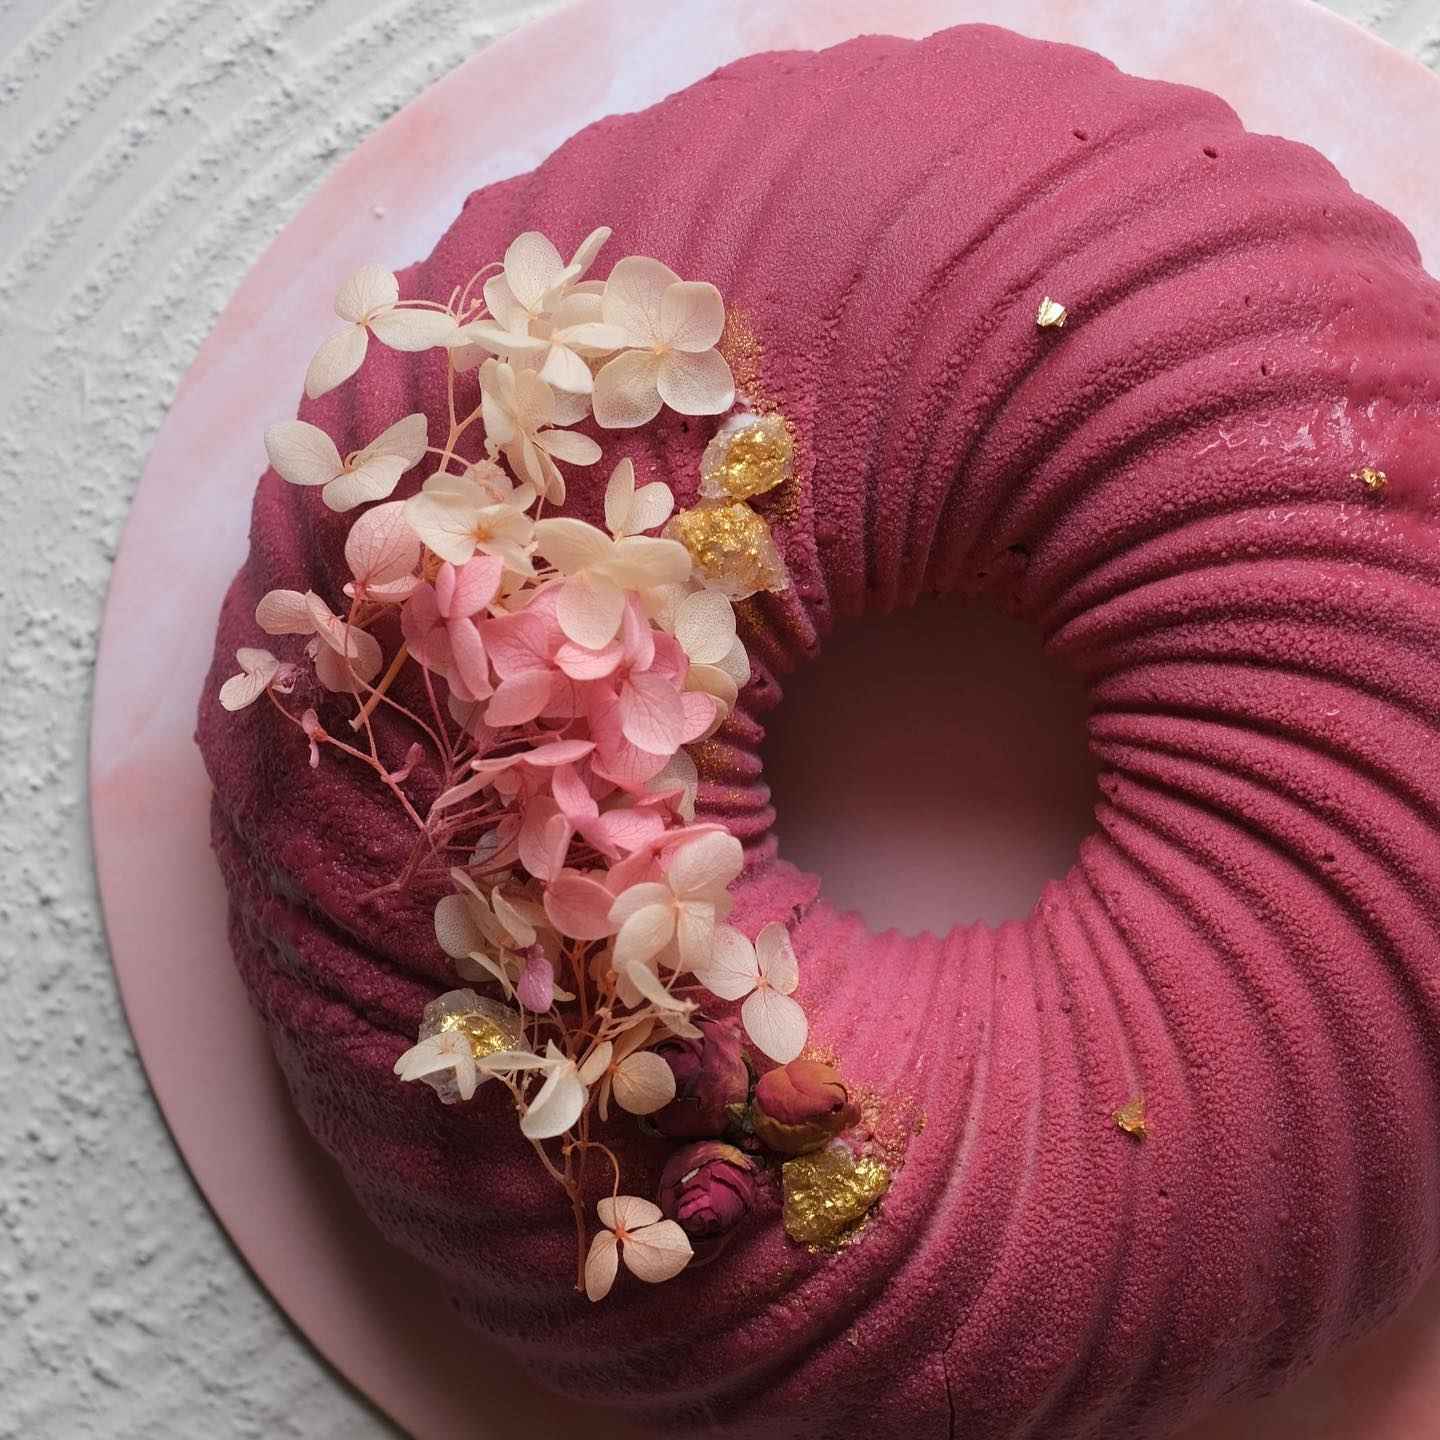 Velvet Texture Cake